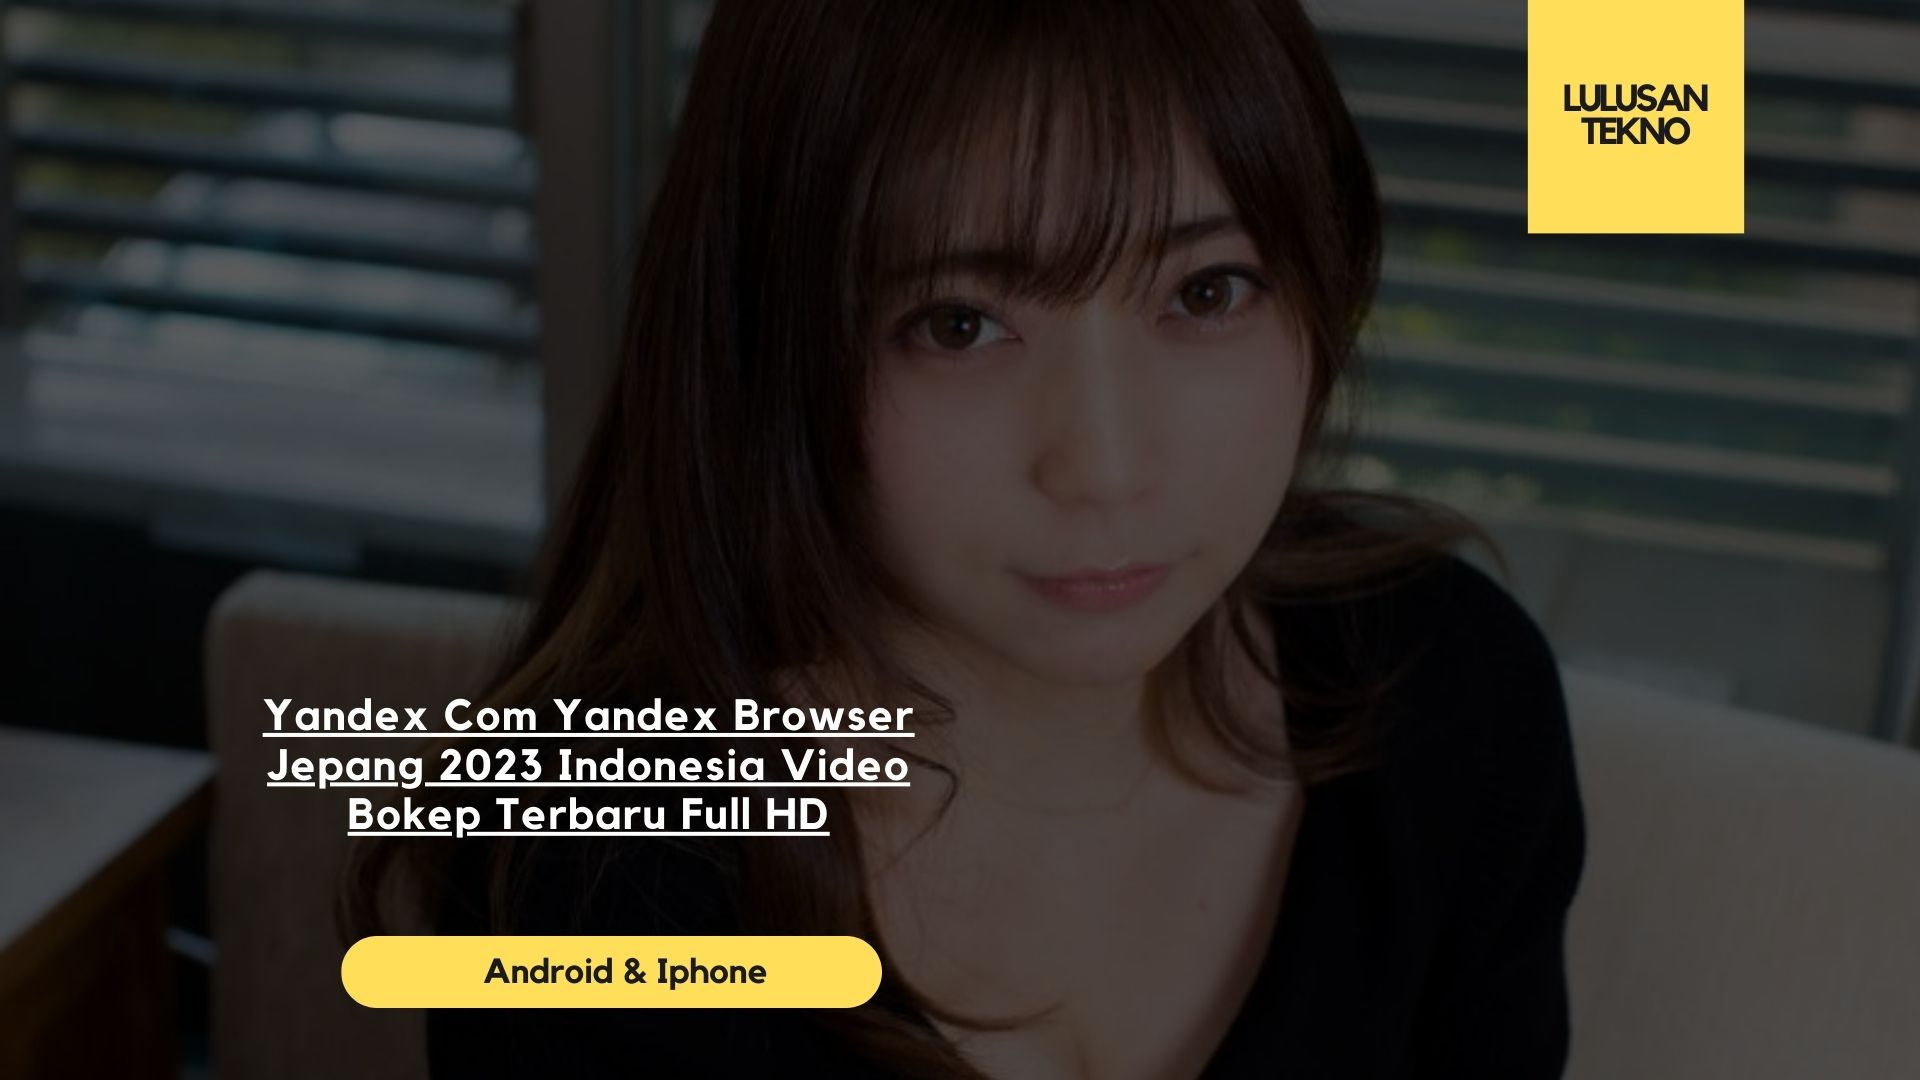 Yandex Com Yandex Browser Jepang 2023 Indonesia Video Bokep Terbaru Full HD